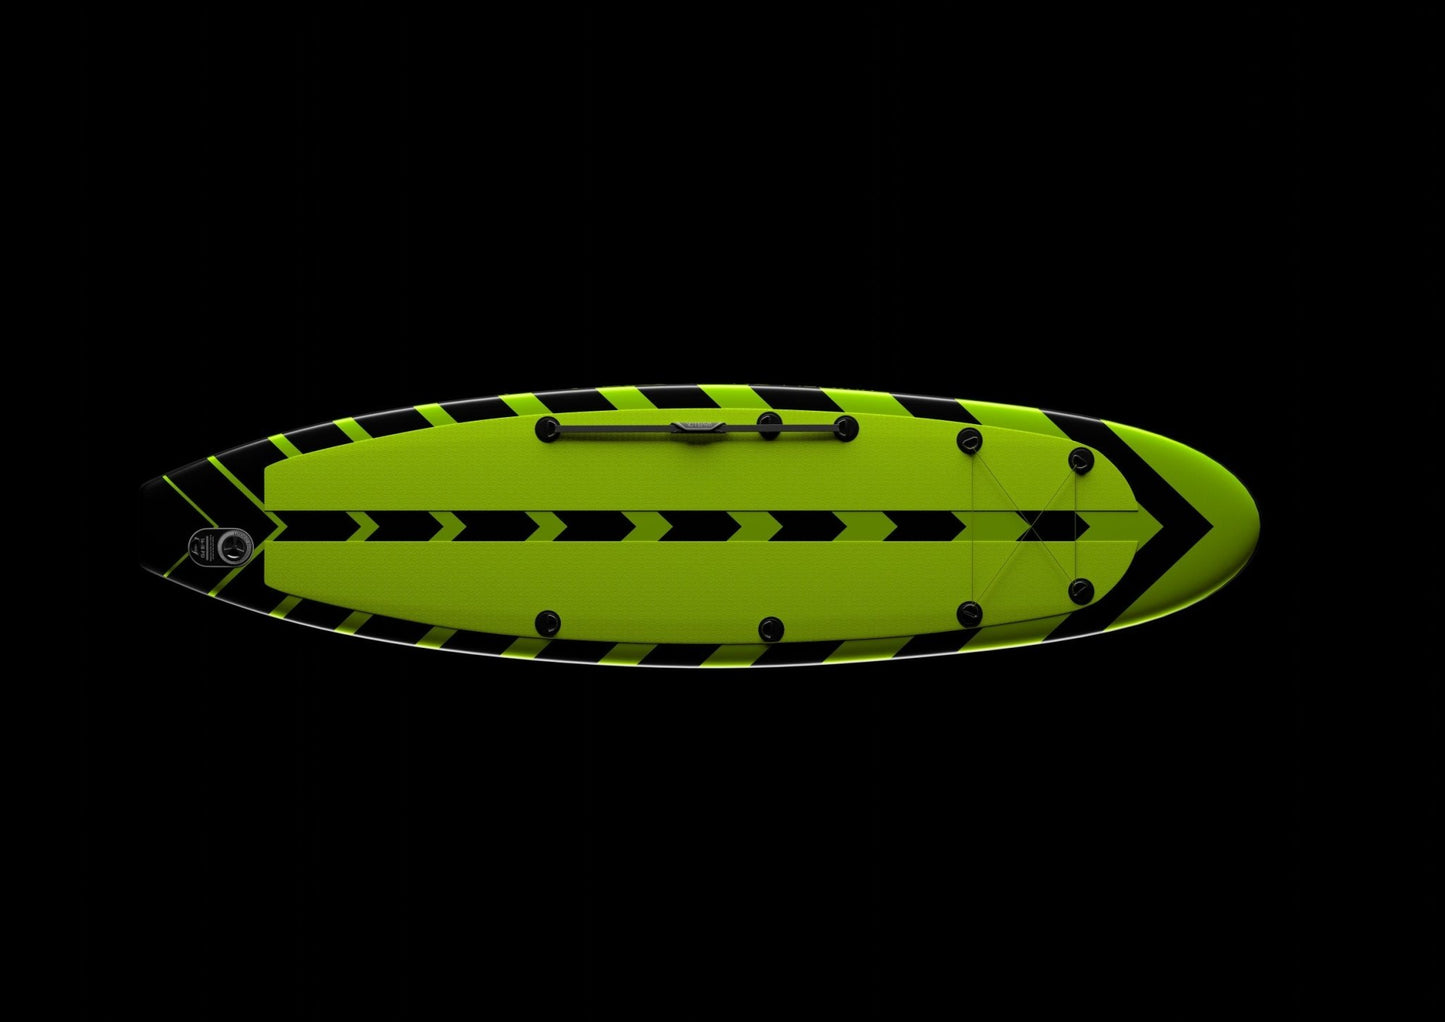 Wavellon x TheArsenale Paddle Board - TheArsenale